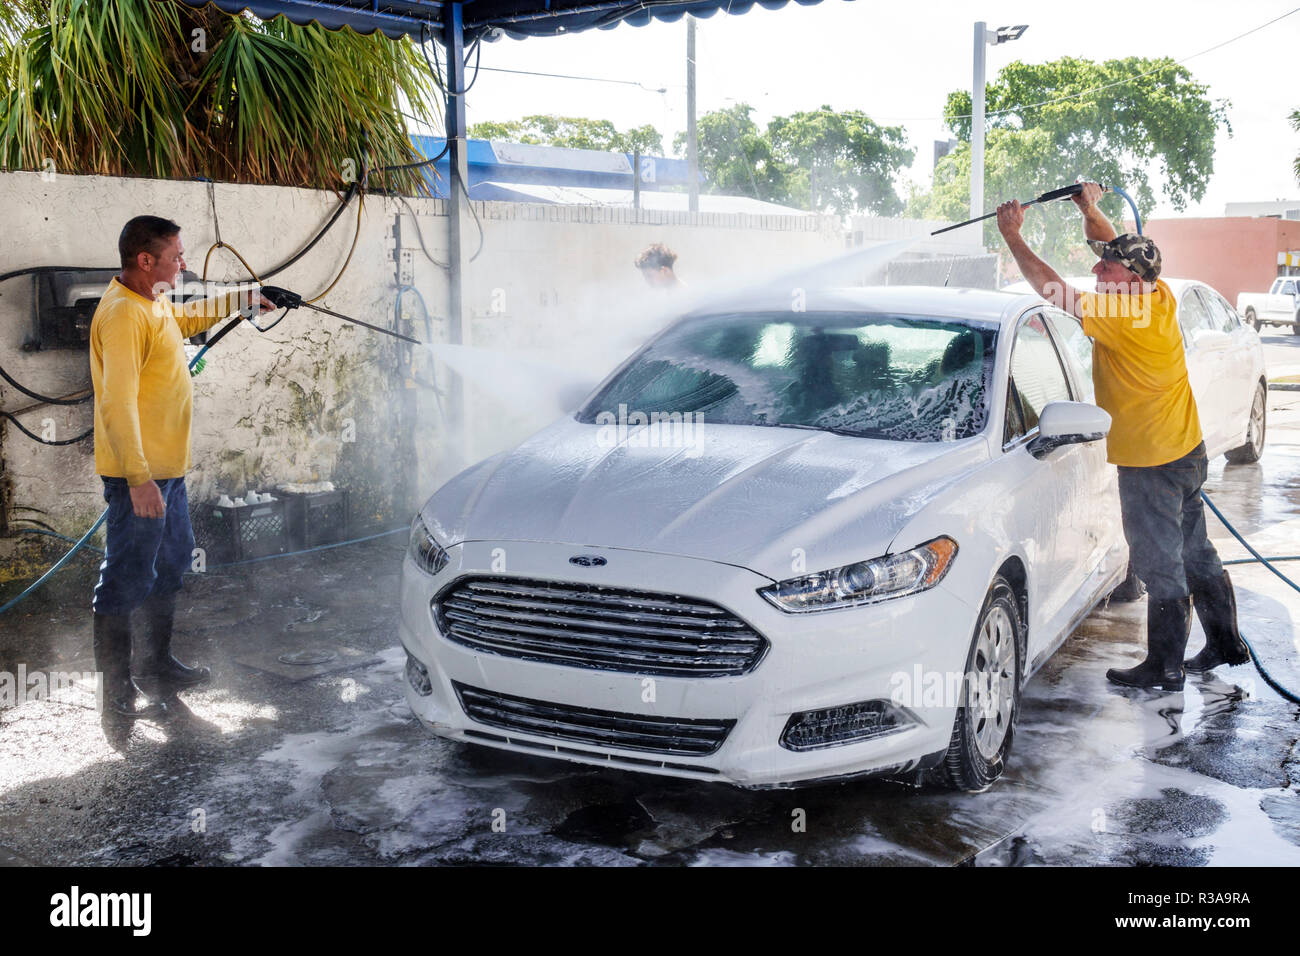 Miami Florida,Little Havana,lavage de voiture,blanc Ford Fusion,homme hispanique hommes,travail,nettoyage,tuyau d'eau pulvérisation haute pression,travail d'équipe,FL18111 Banque D'Images